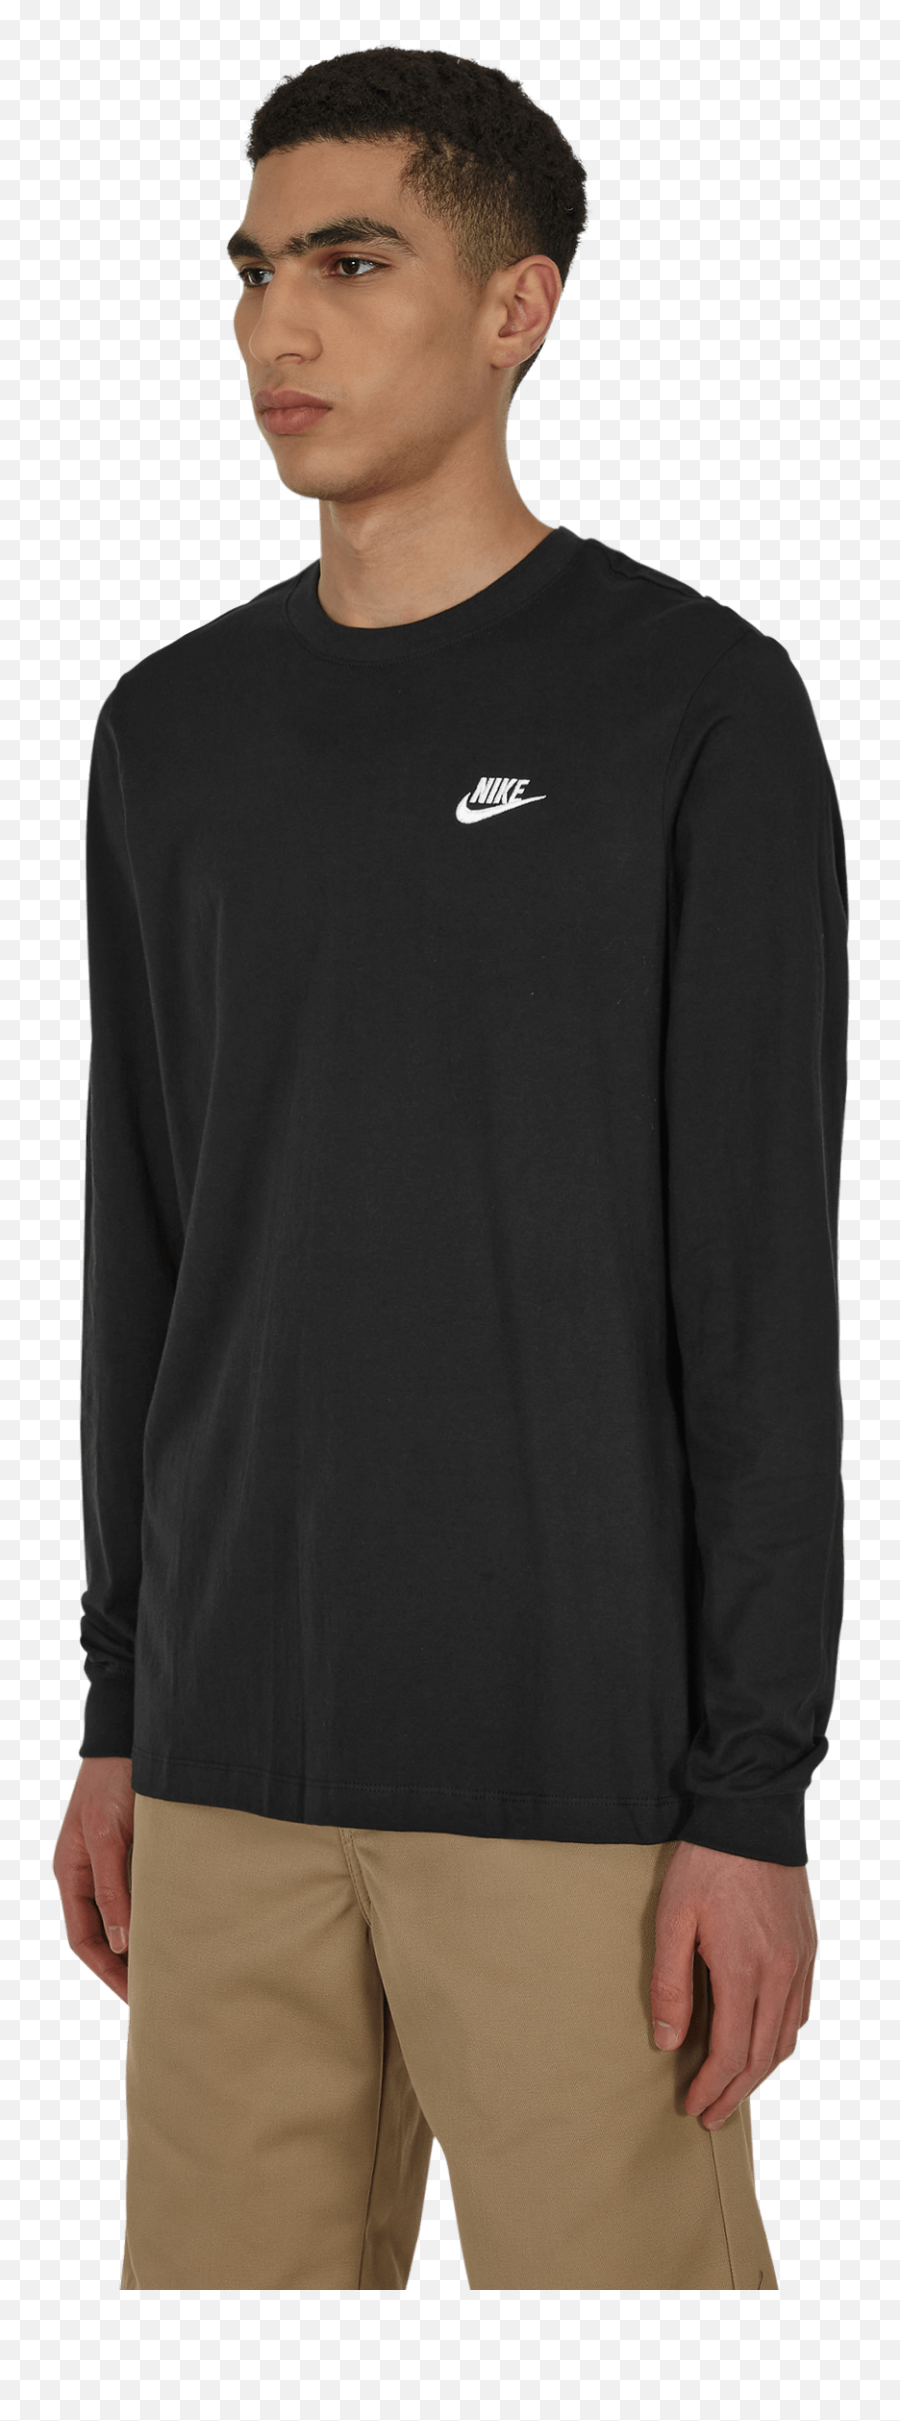 Club Longsleeve T - Shirt Black Krink X Vans T Shirt Png,Nike Icon 6.5 Shorts